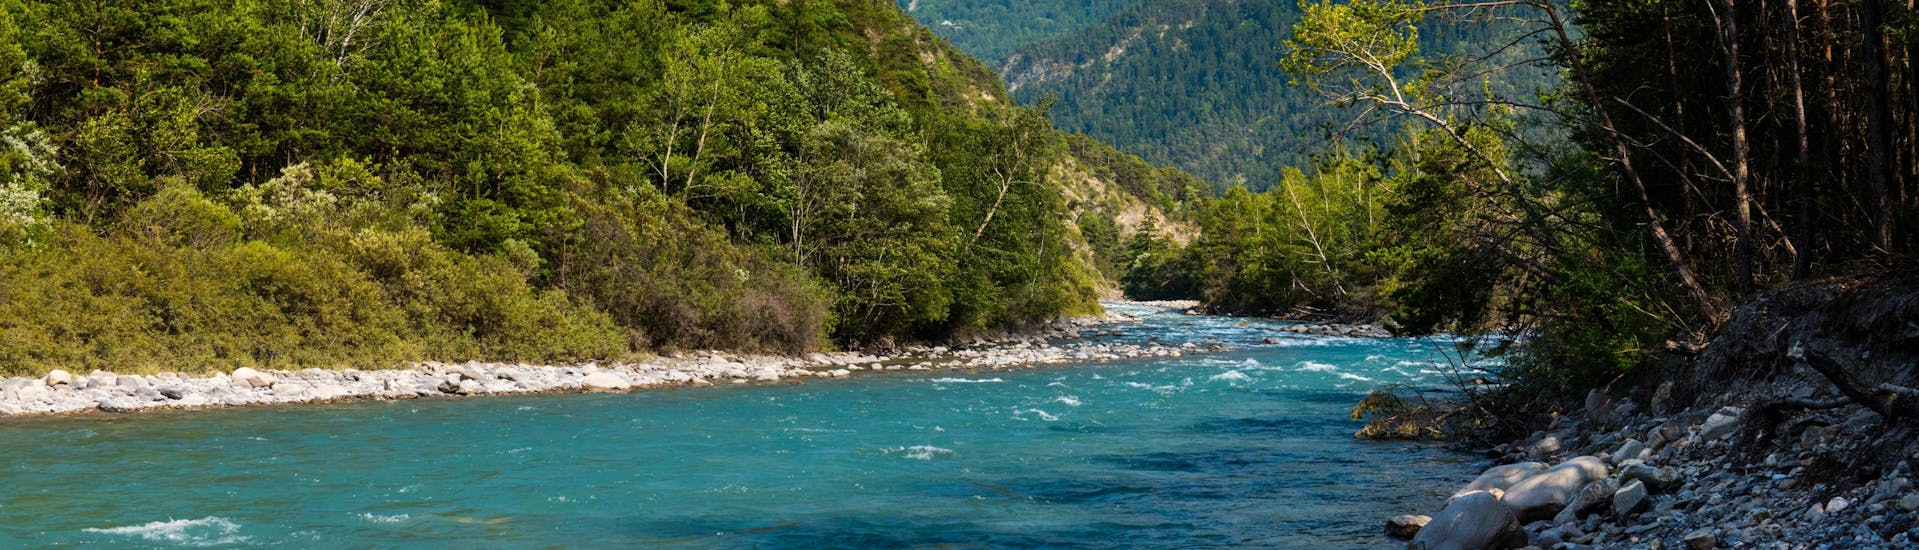 La rivière Ubaye dans les Alpes du Sud, l'une des plus célèbres destinations de rafting en France.